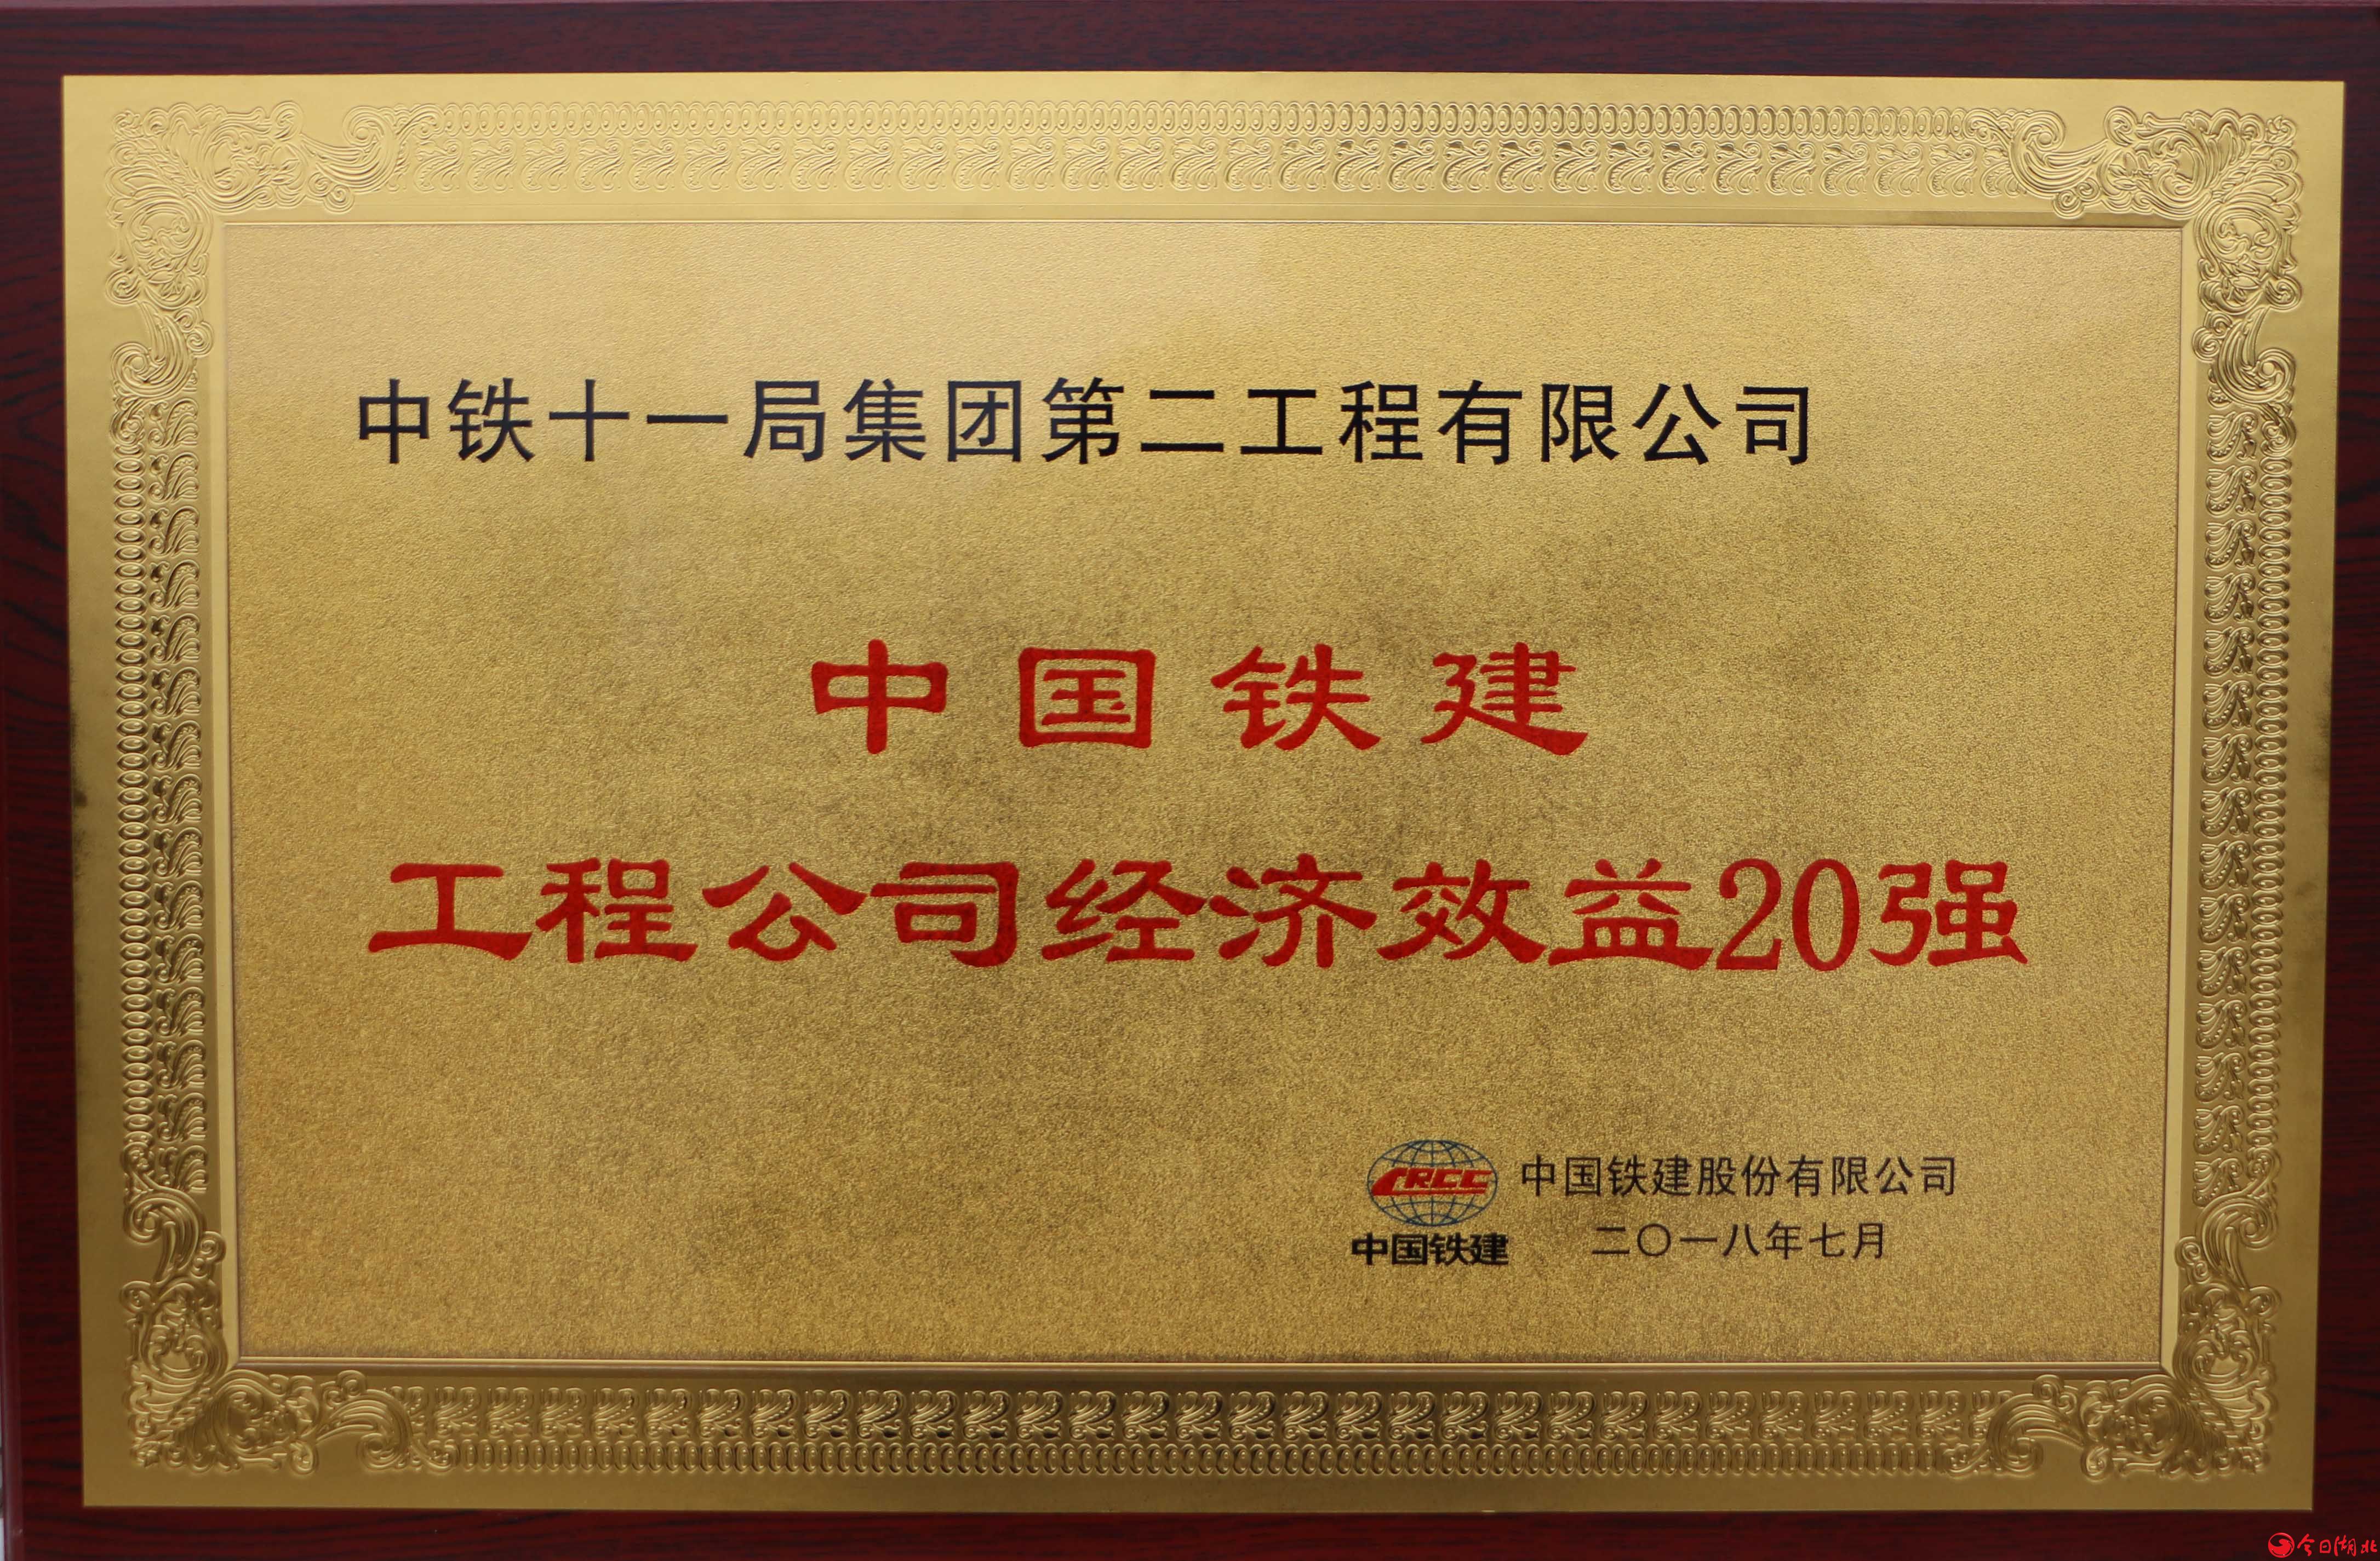 为新中国70华诞献礼,中铁十一局集团员工倾情演绎《我们的青春不一样》8.jpg